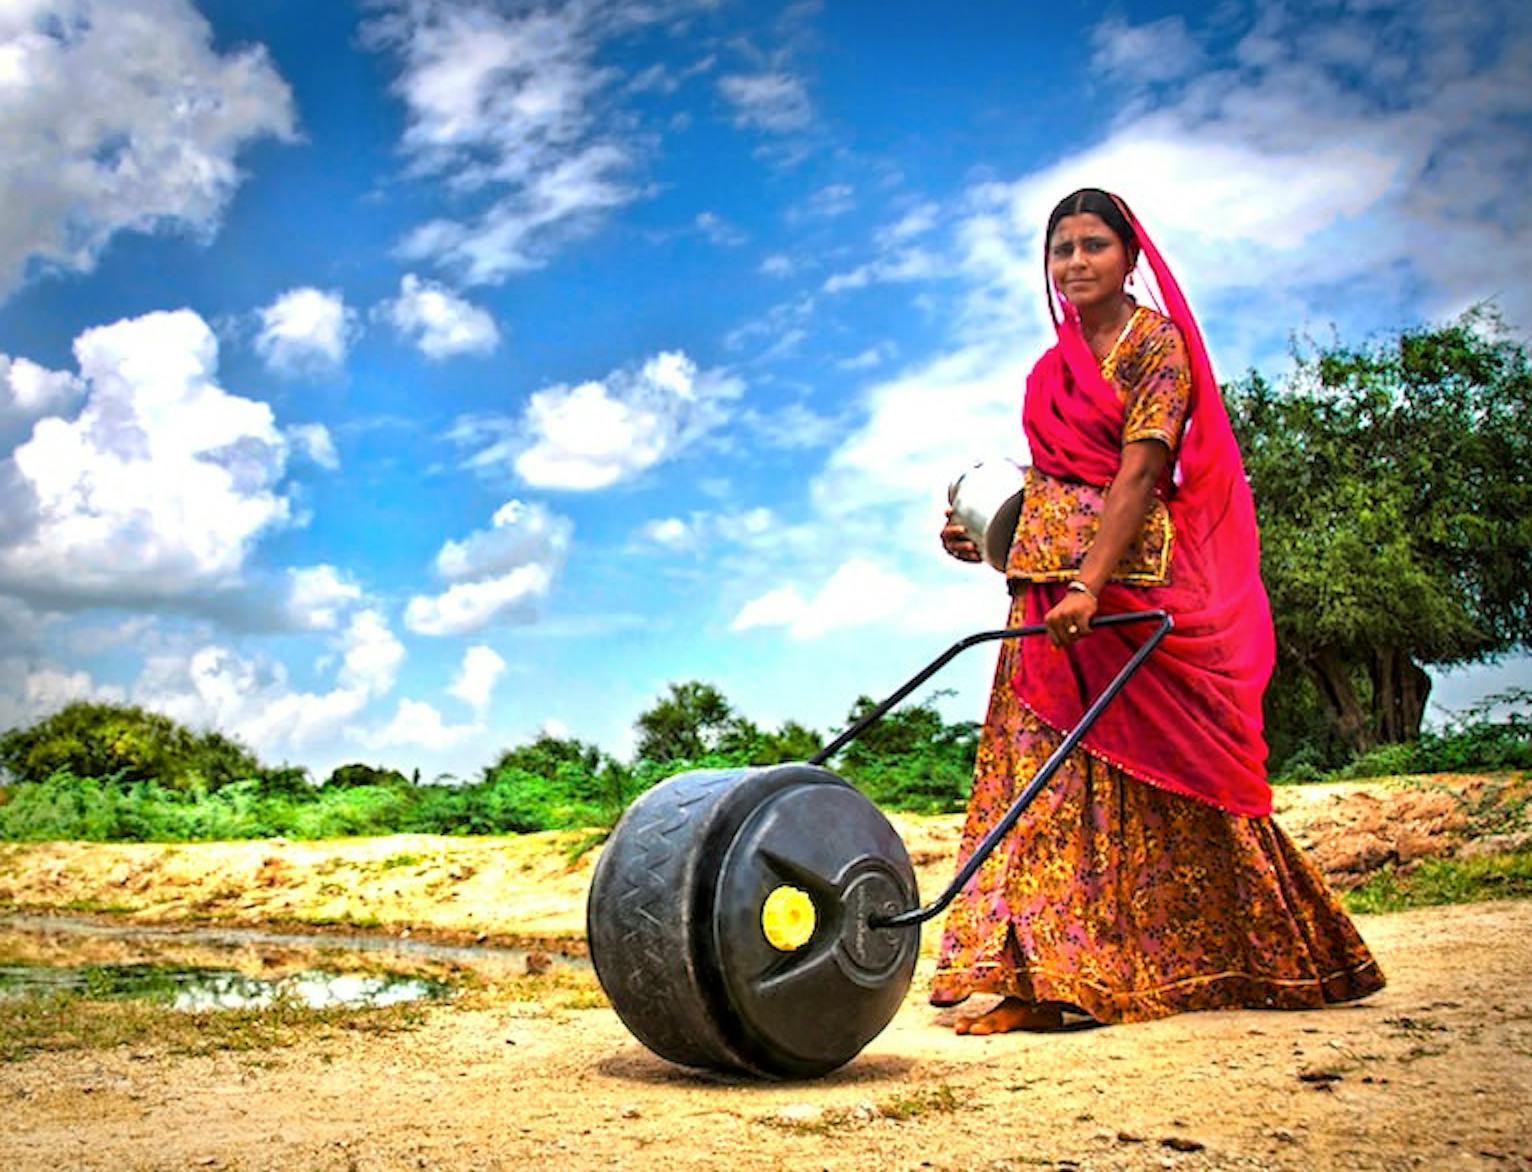 WaterWheel for women in Indian rural communities